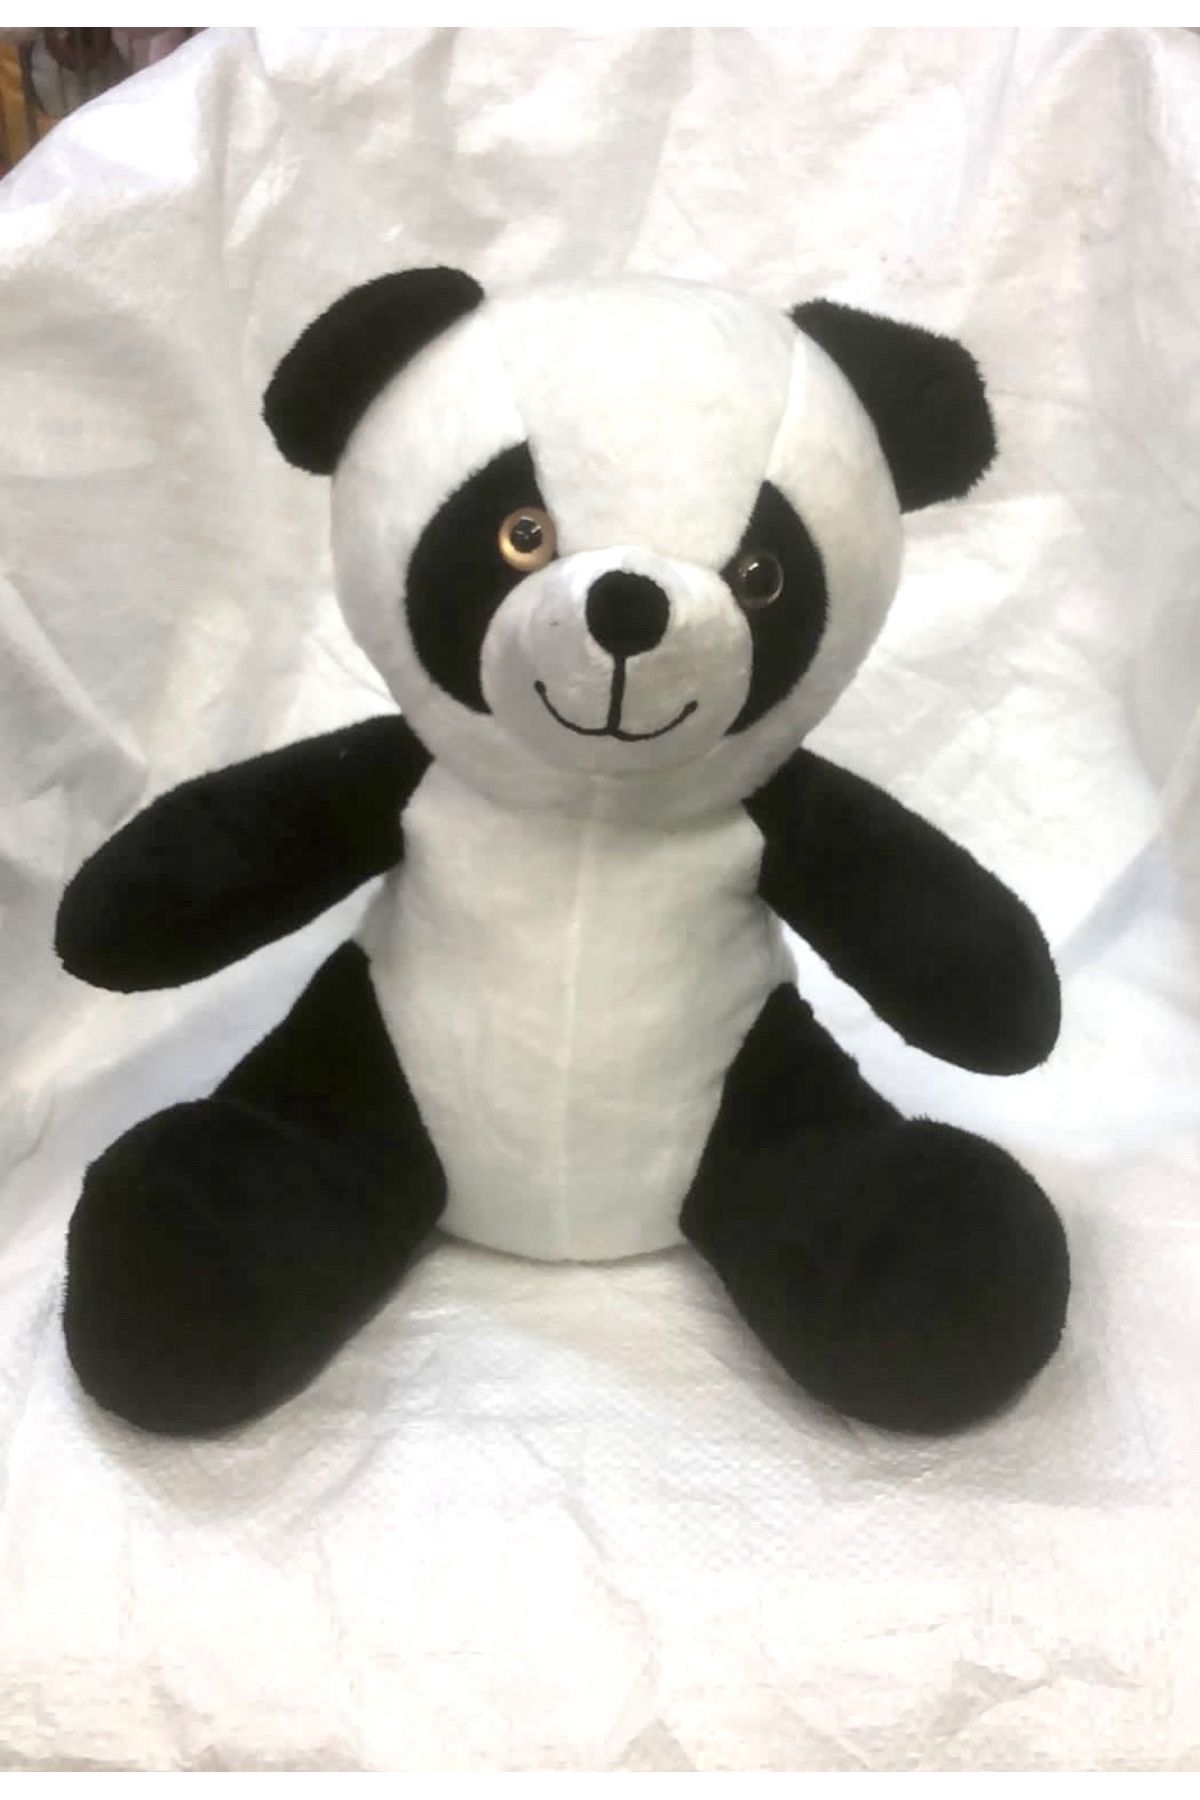 AZİZ OYUNCAK 35 cm Panda ayıcık yumoş teddy uyku arkadaşı